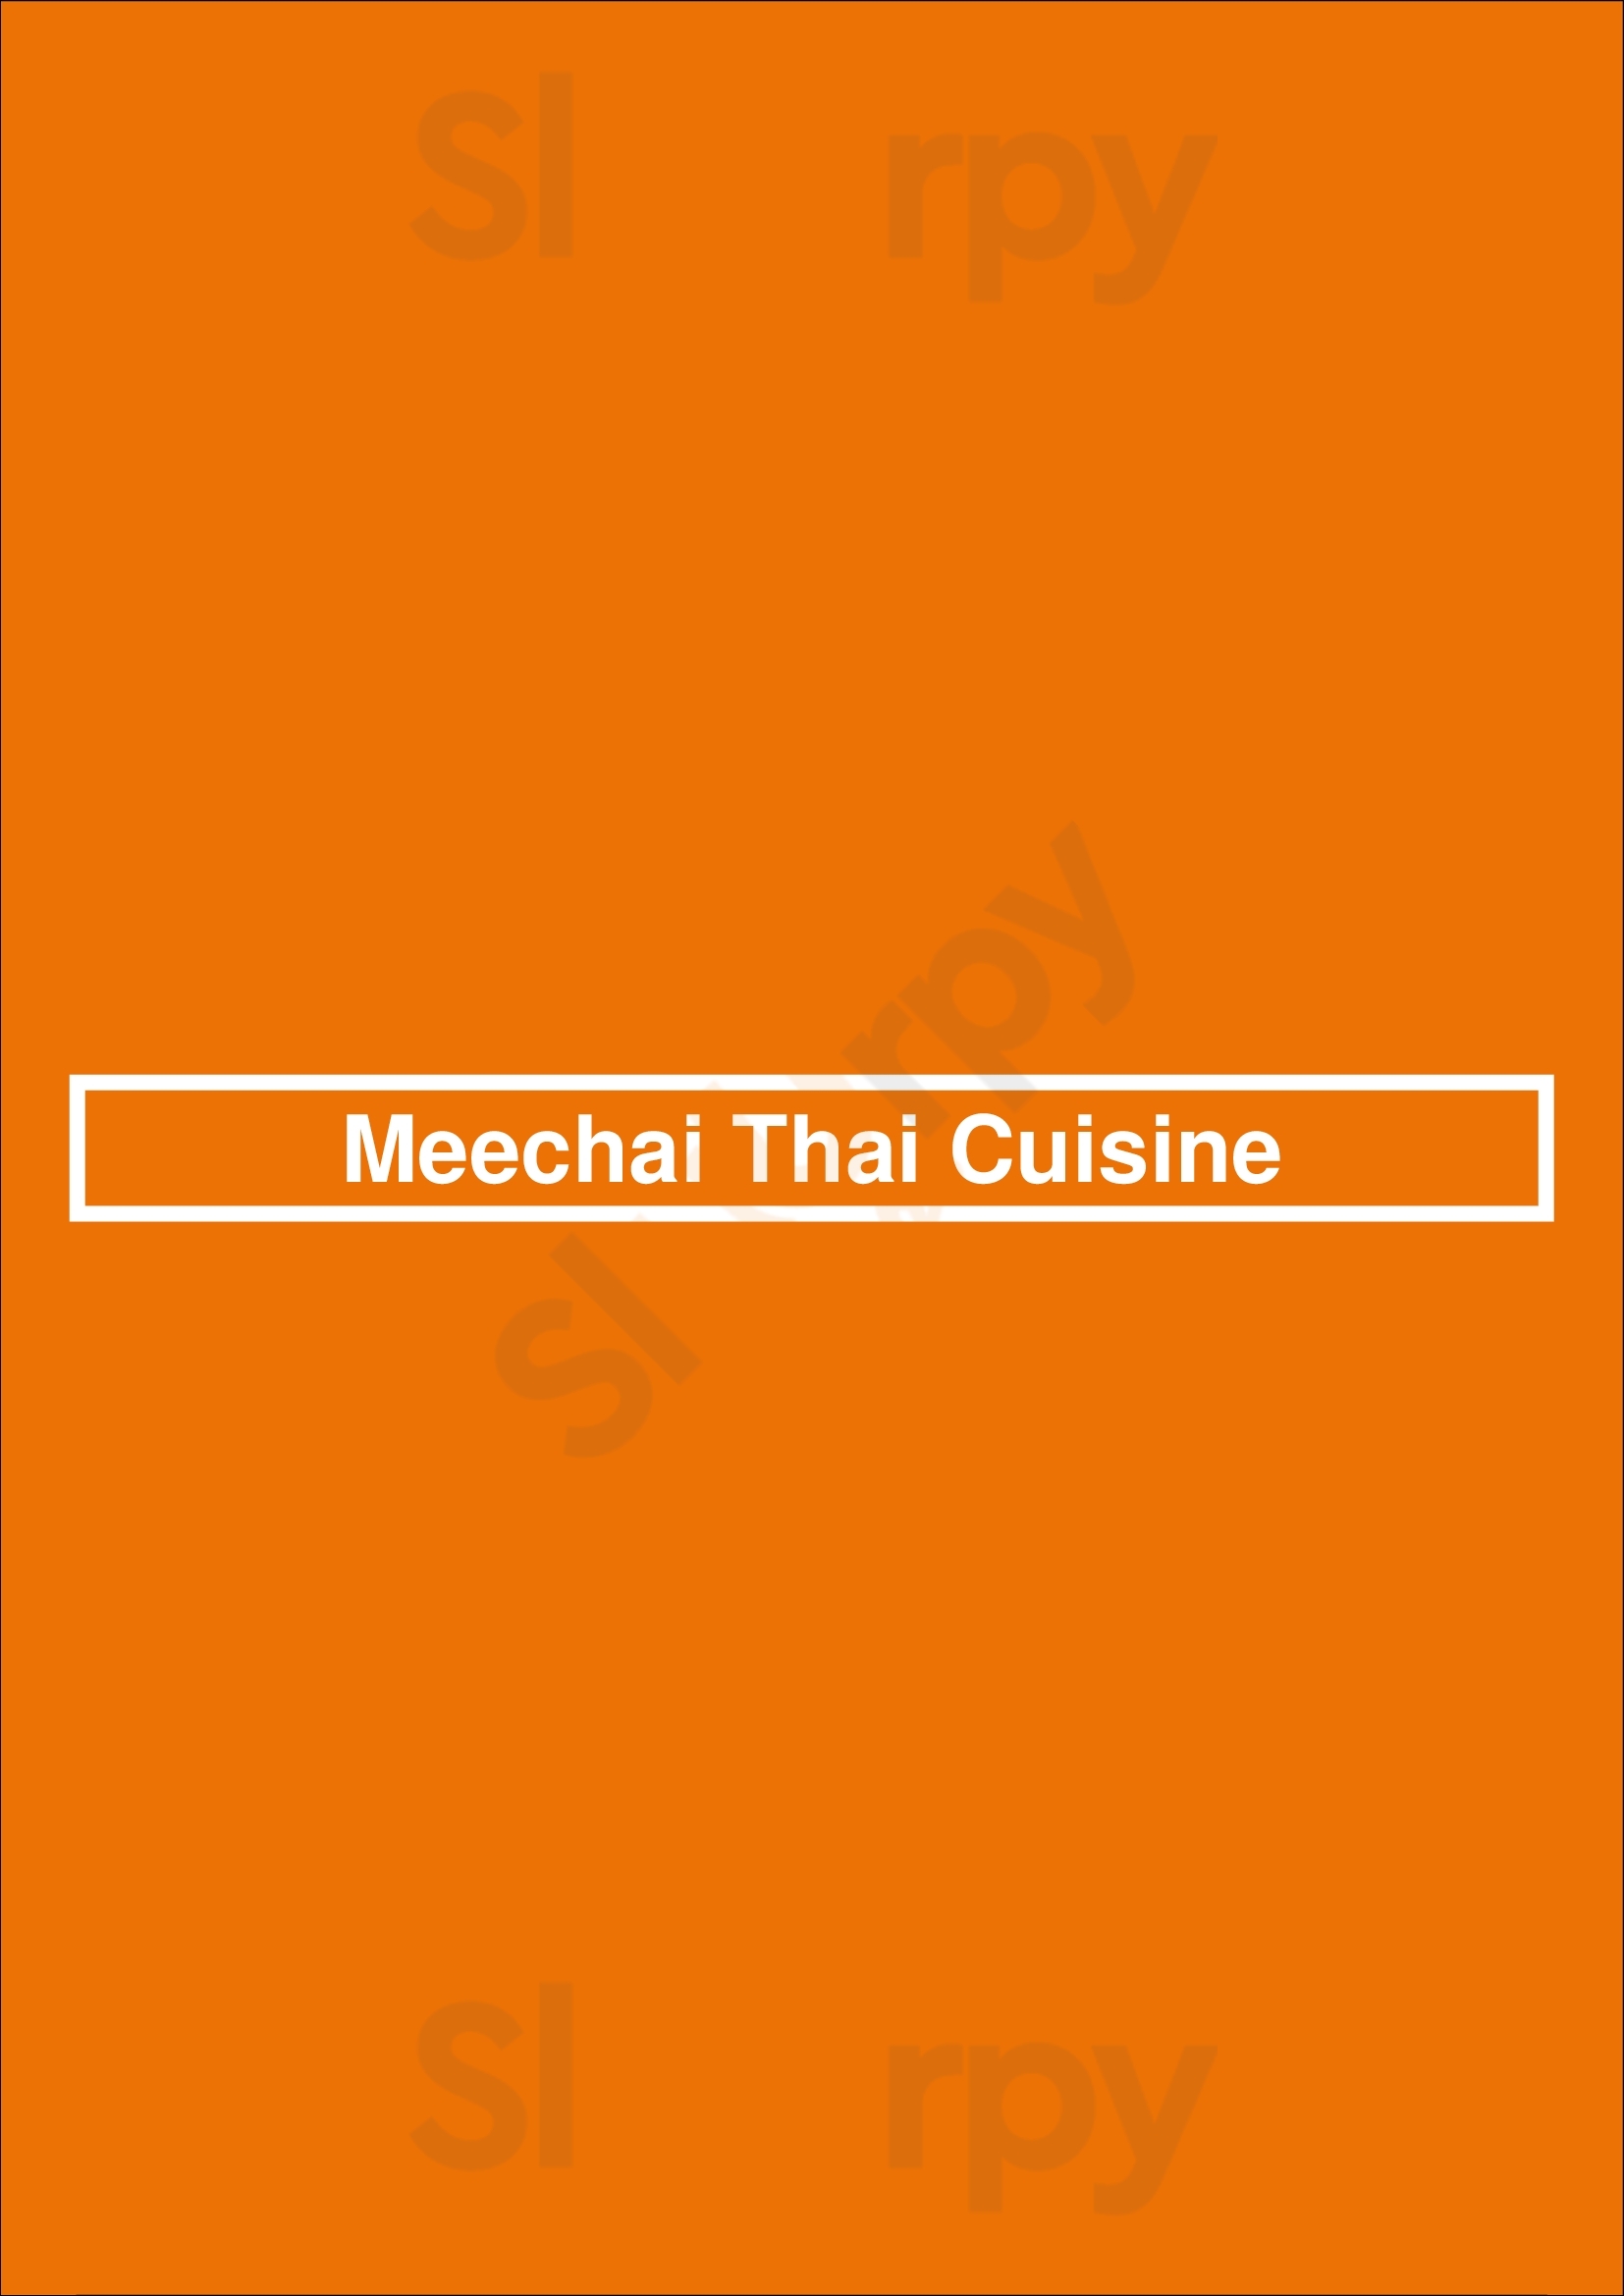 Meechai Thai Cuisine San Diego Menu - 1